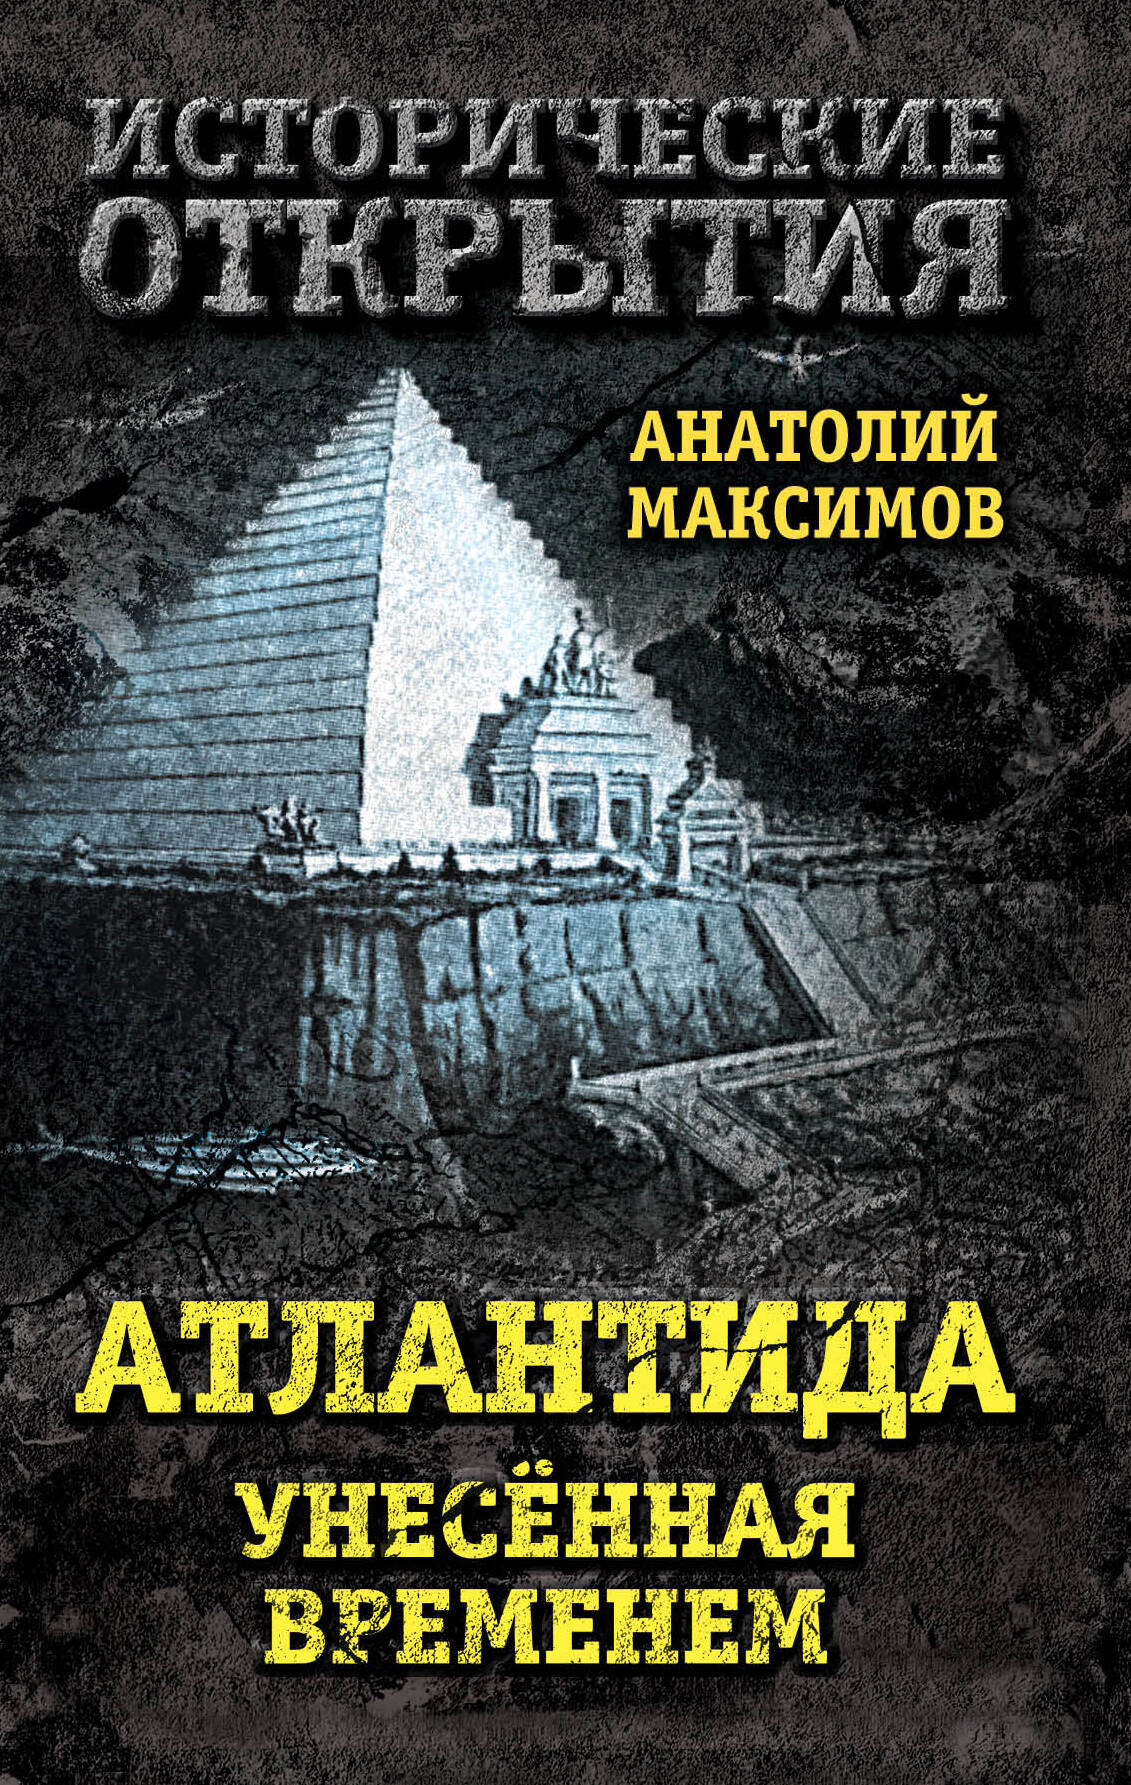 Максимов Анатолий Борисович - Атлантида, унесенная временем